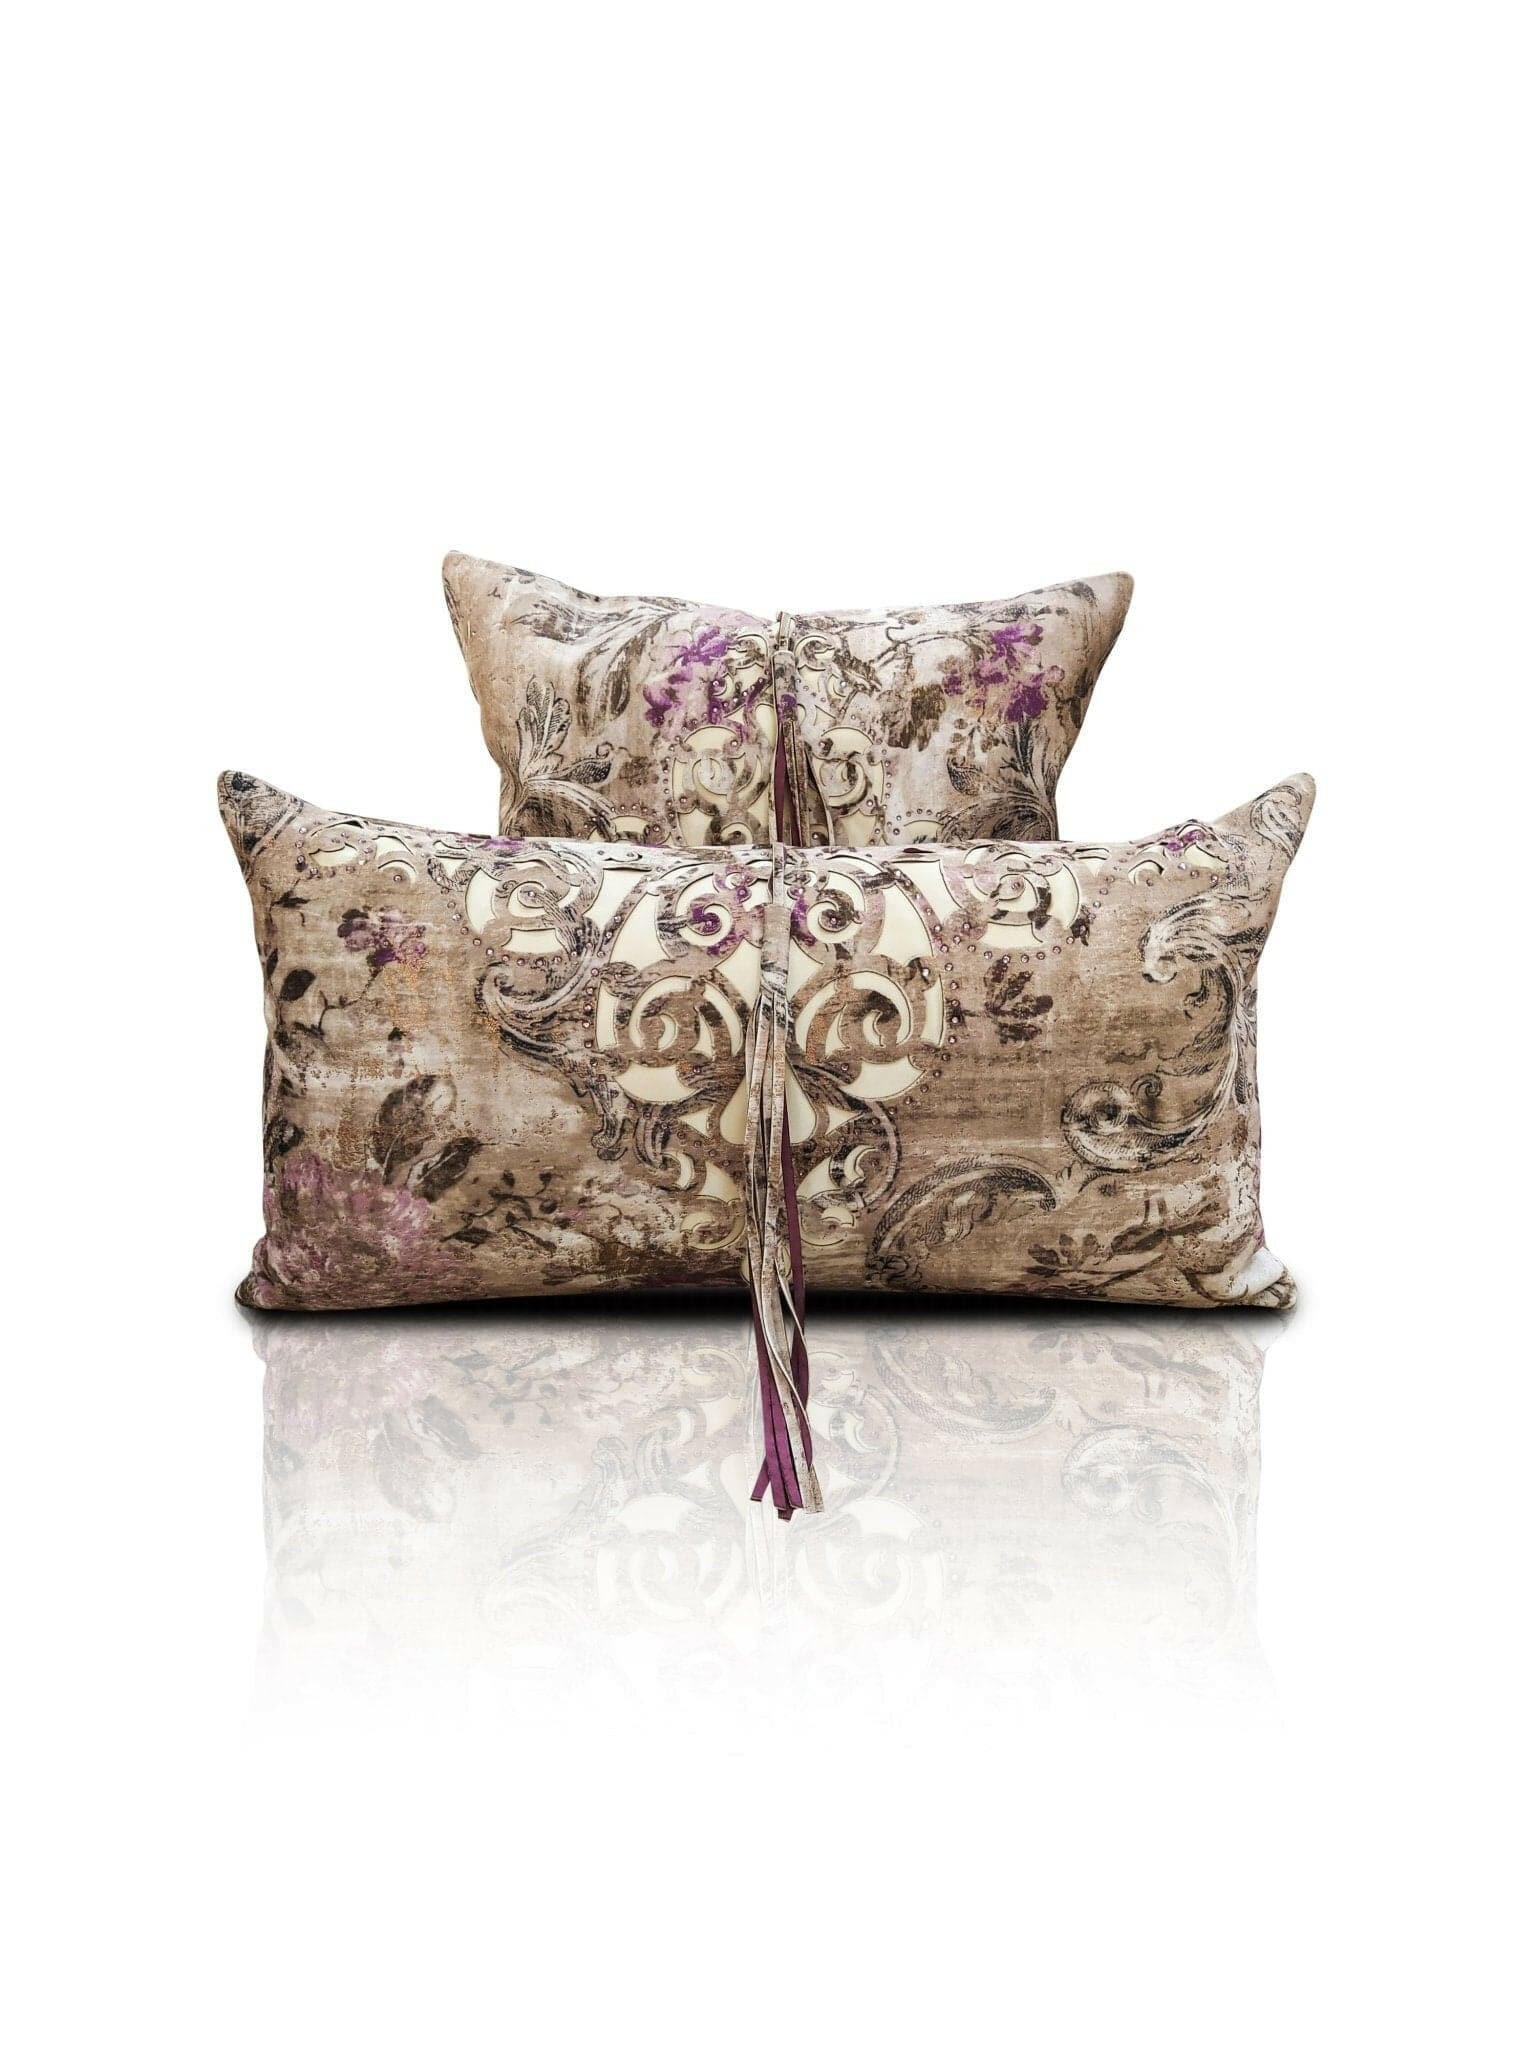 Sena Cushion Cover - Creative Home Designs Pillowcases, Turkish Throw Pillows & Shams, Gold & Fuschia Color Cut Out Jacquard Floral Sham With Diamonds